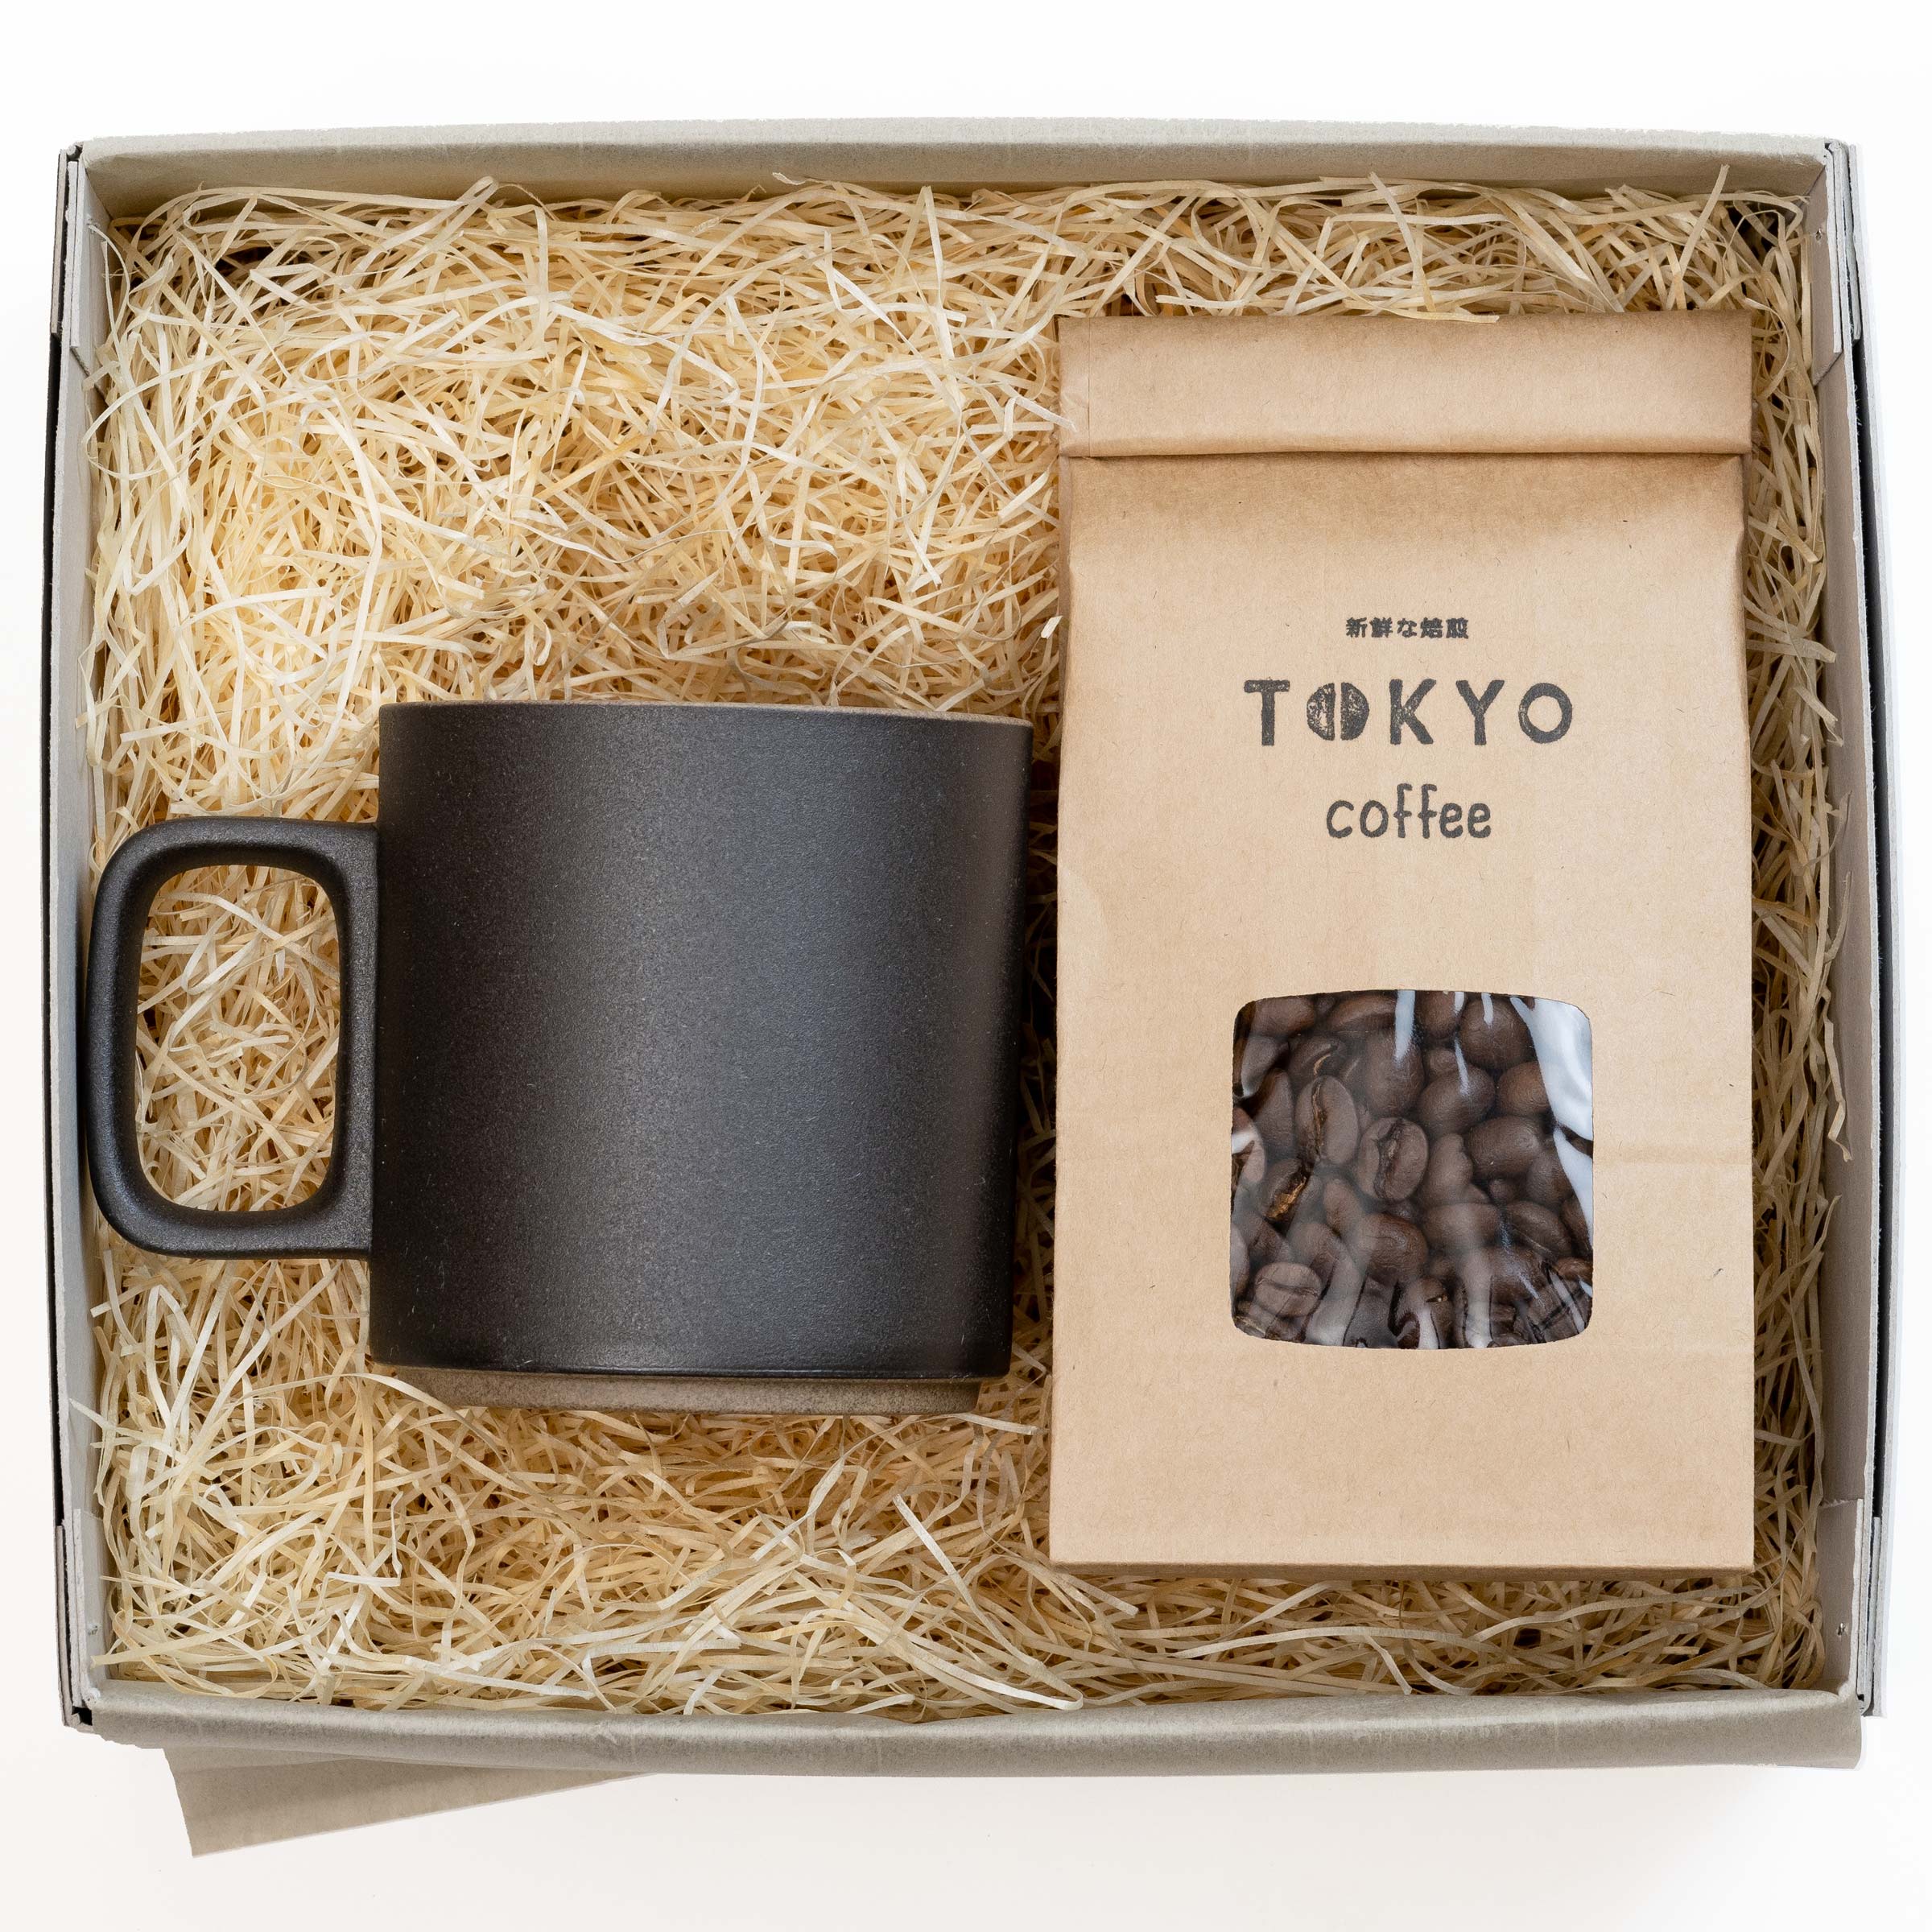 オーガニックコーヒー豆 150g x HASAMI PORCELAIN ブラック Mug コラボ プレゼント 波佐見焼 マグカップ と TOKYO COFFEE の ギフトボックス Mサイズ